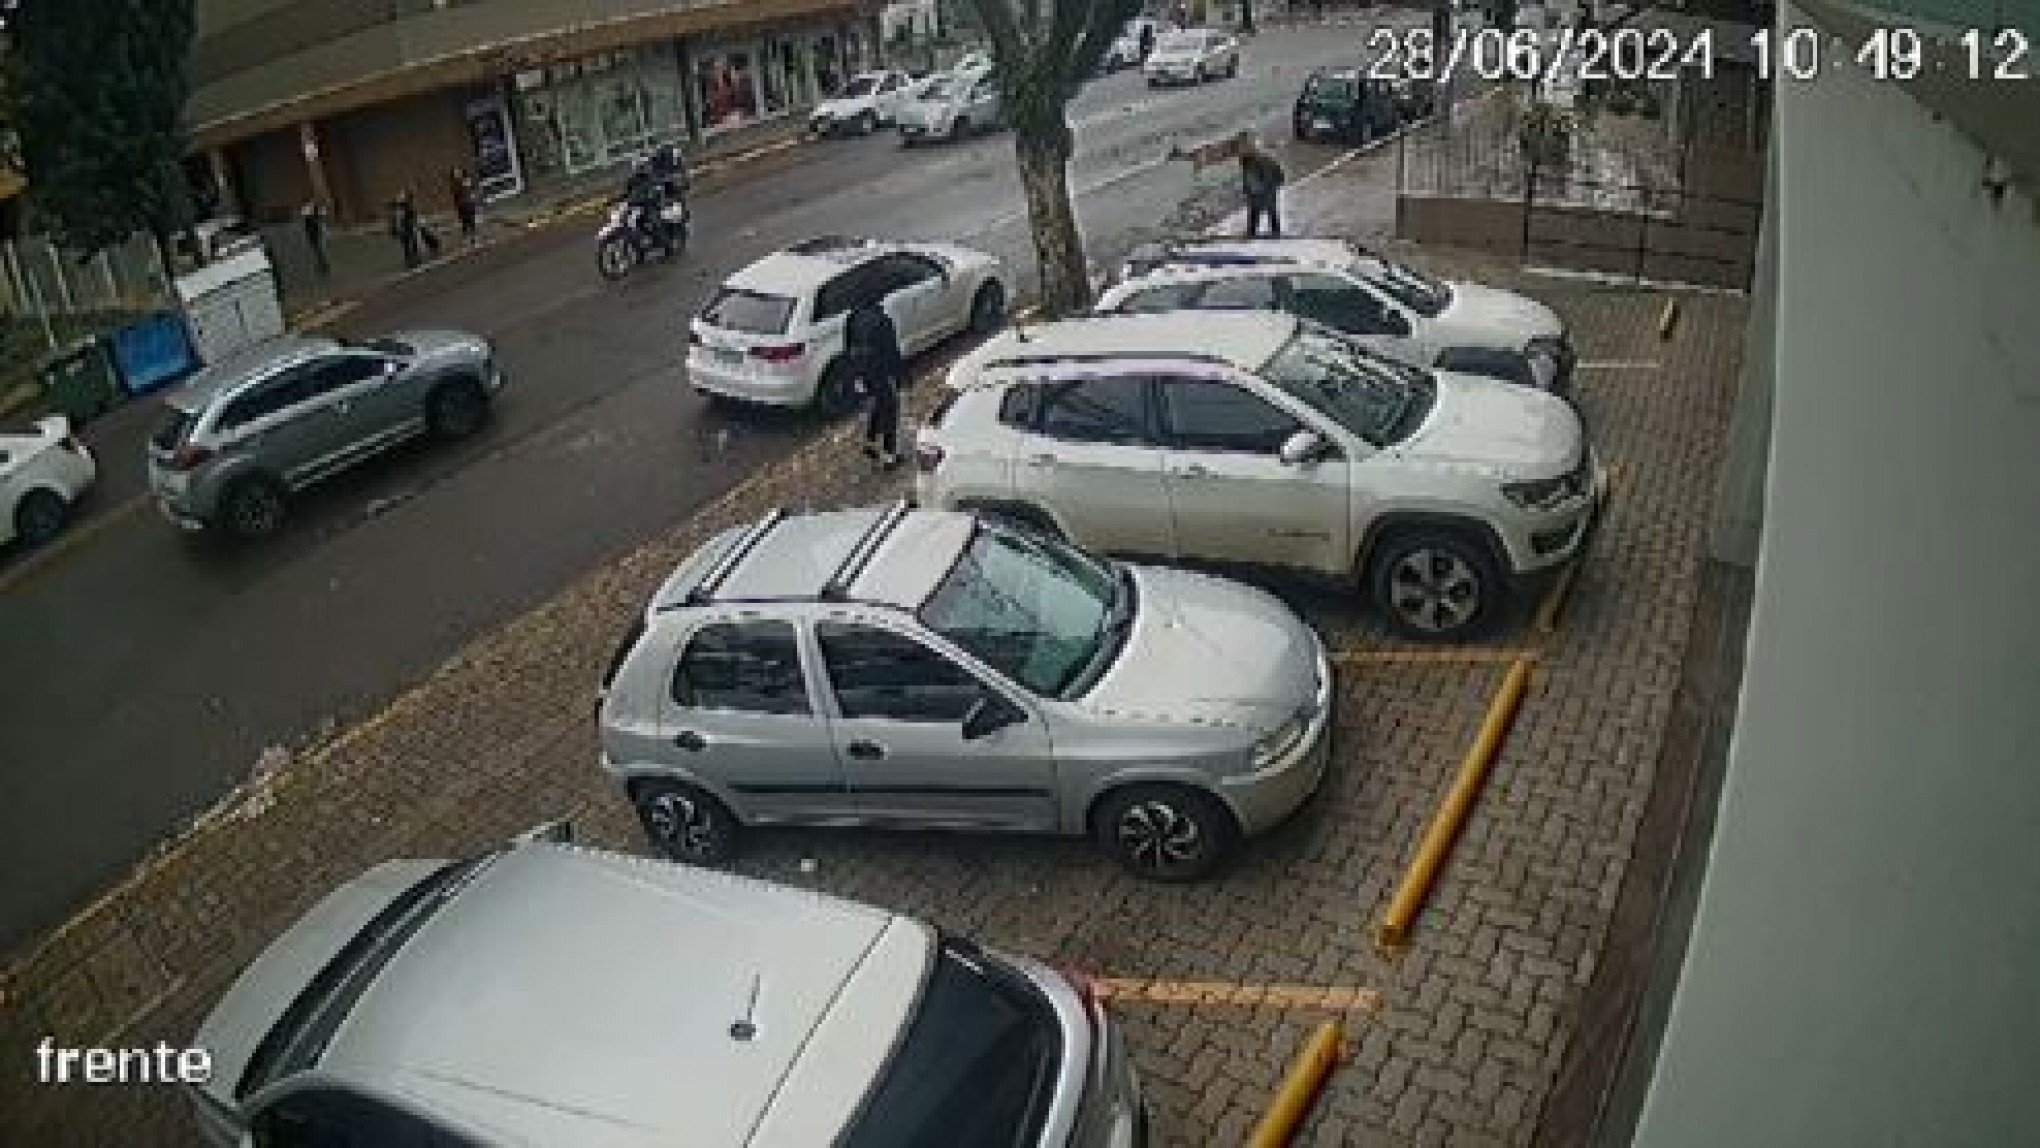 VÍDEO: Veado atropela pedestre na Serra gaúcha e câmeras flagram momento; veja